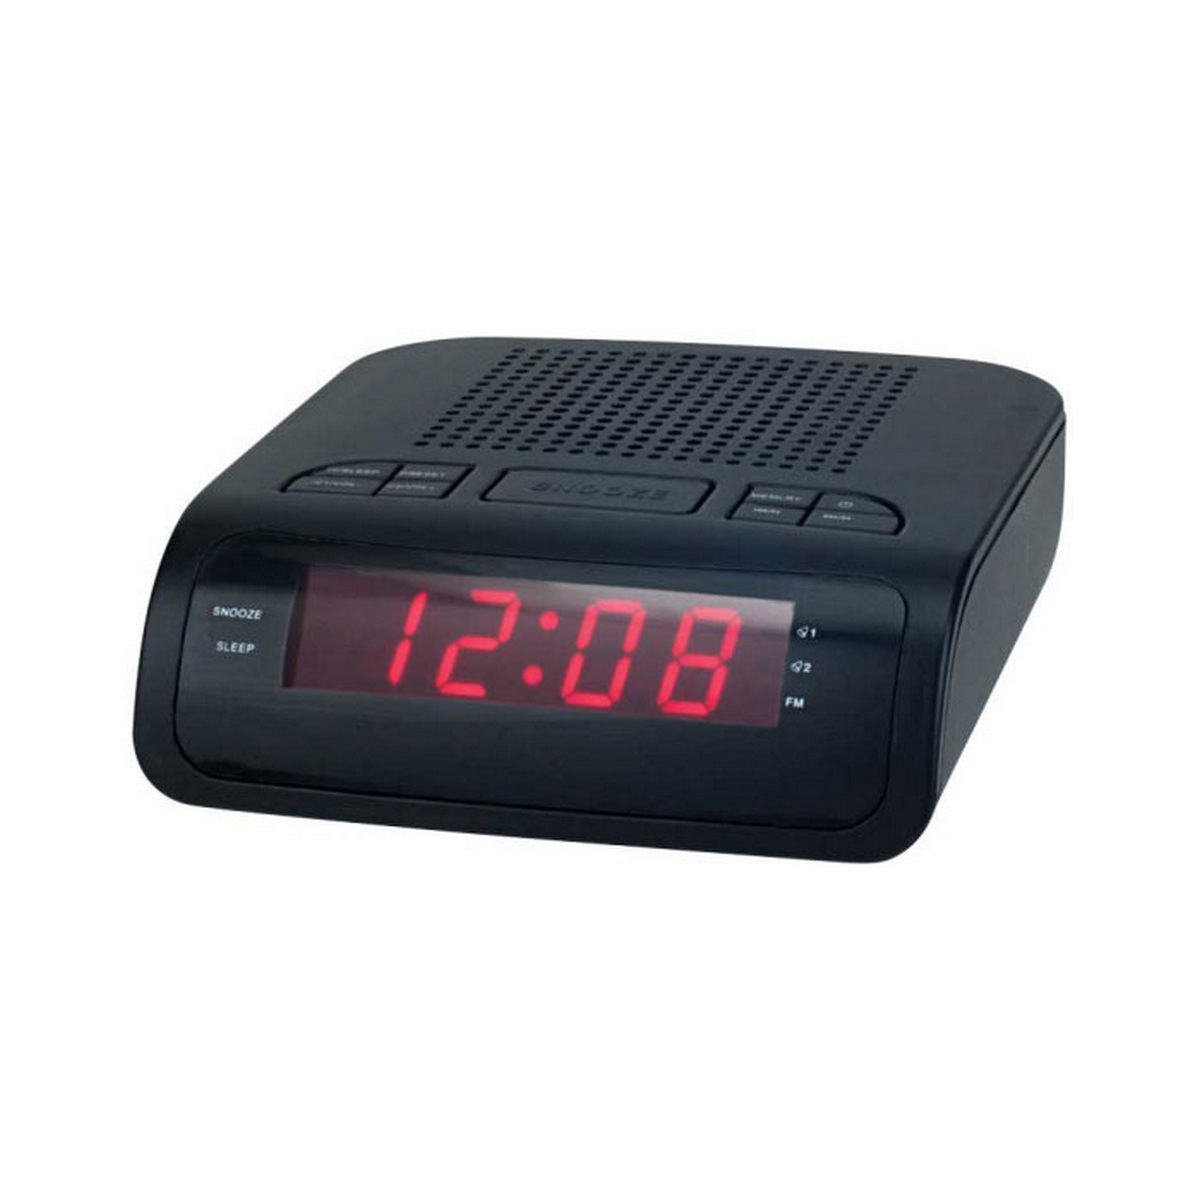 Despertador Denver Cr419mk2 display led radio fm alar cr419 negro pll importado reloj